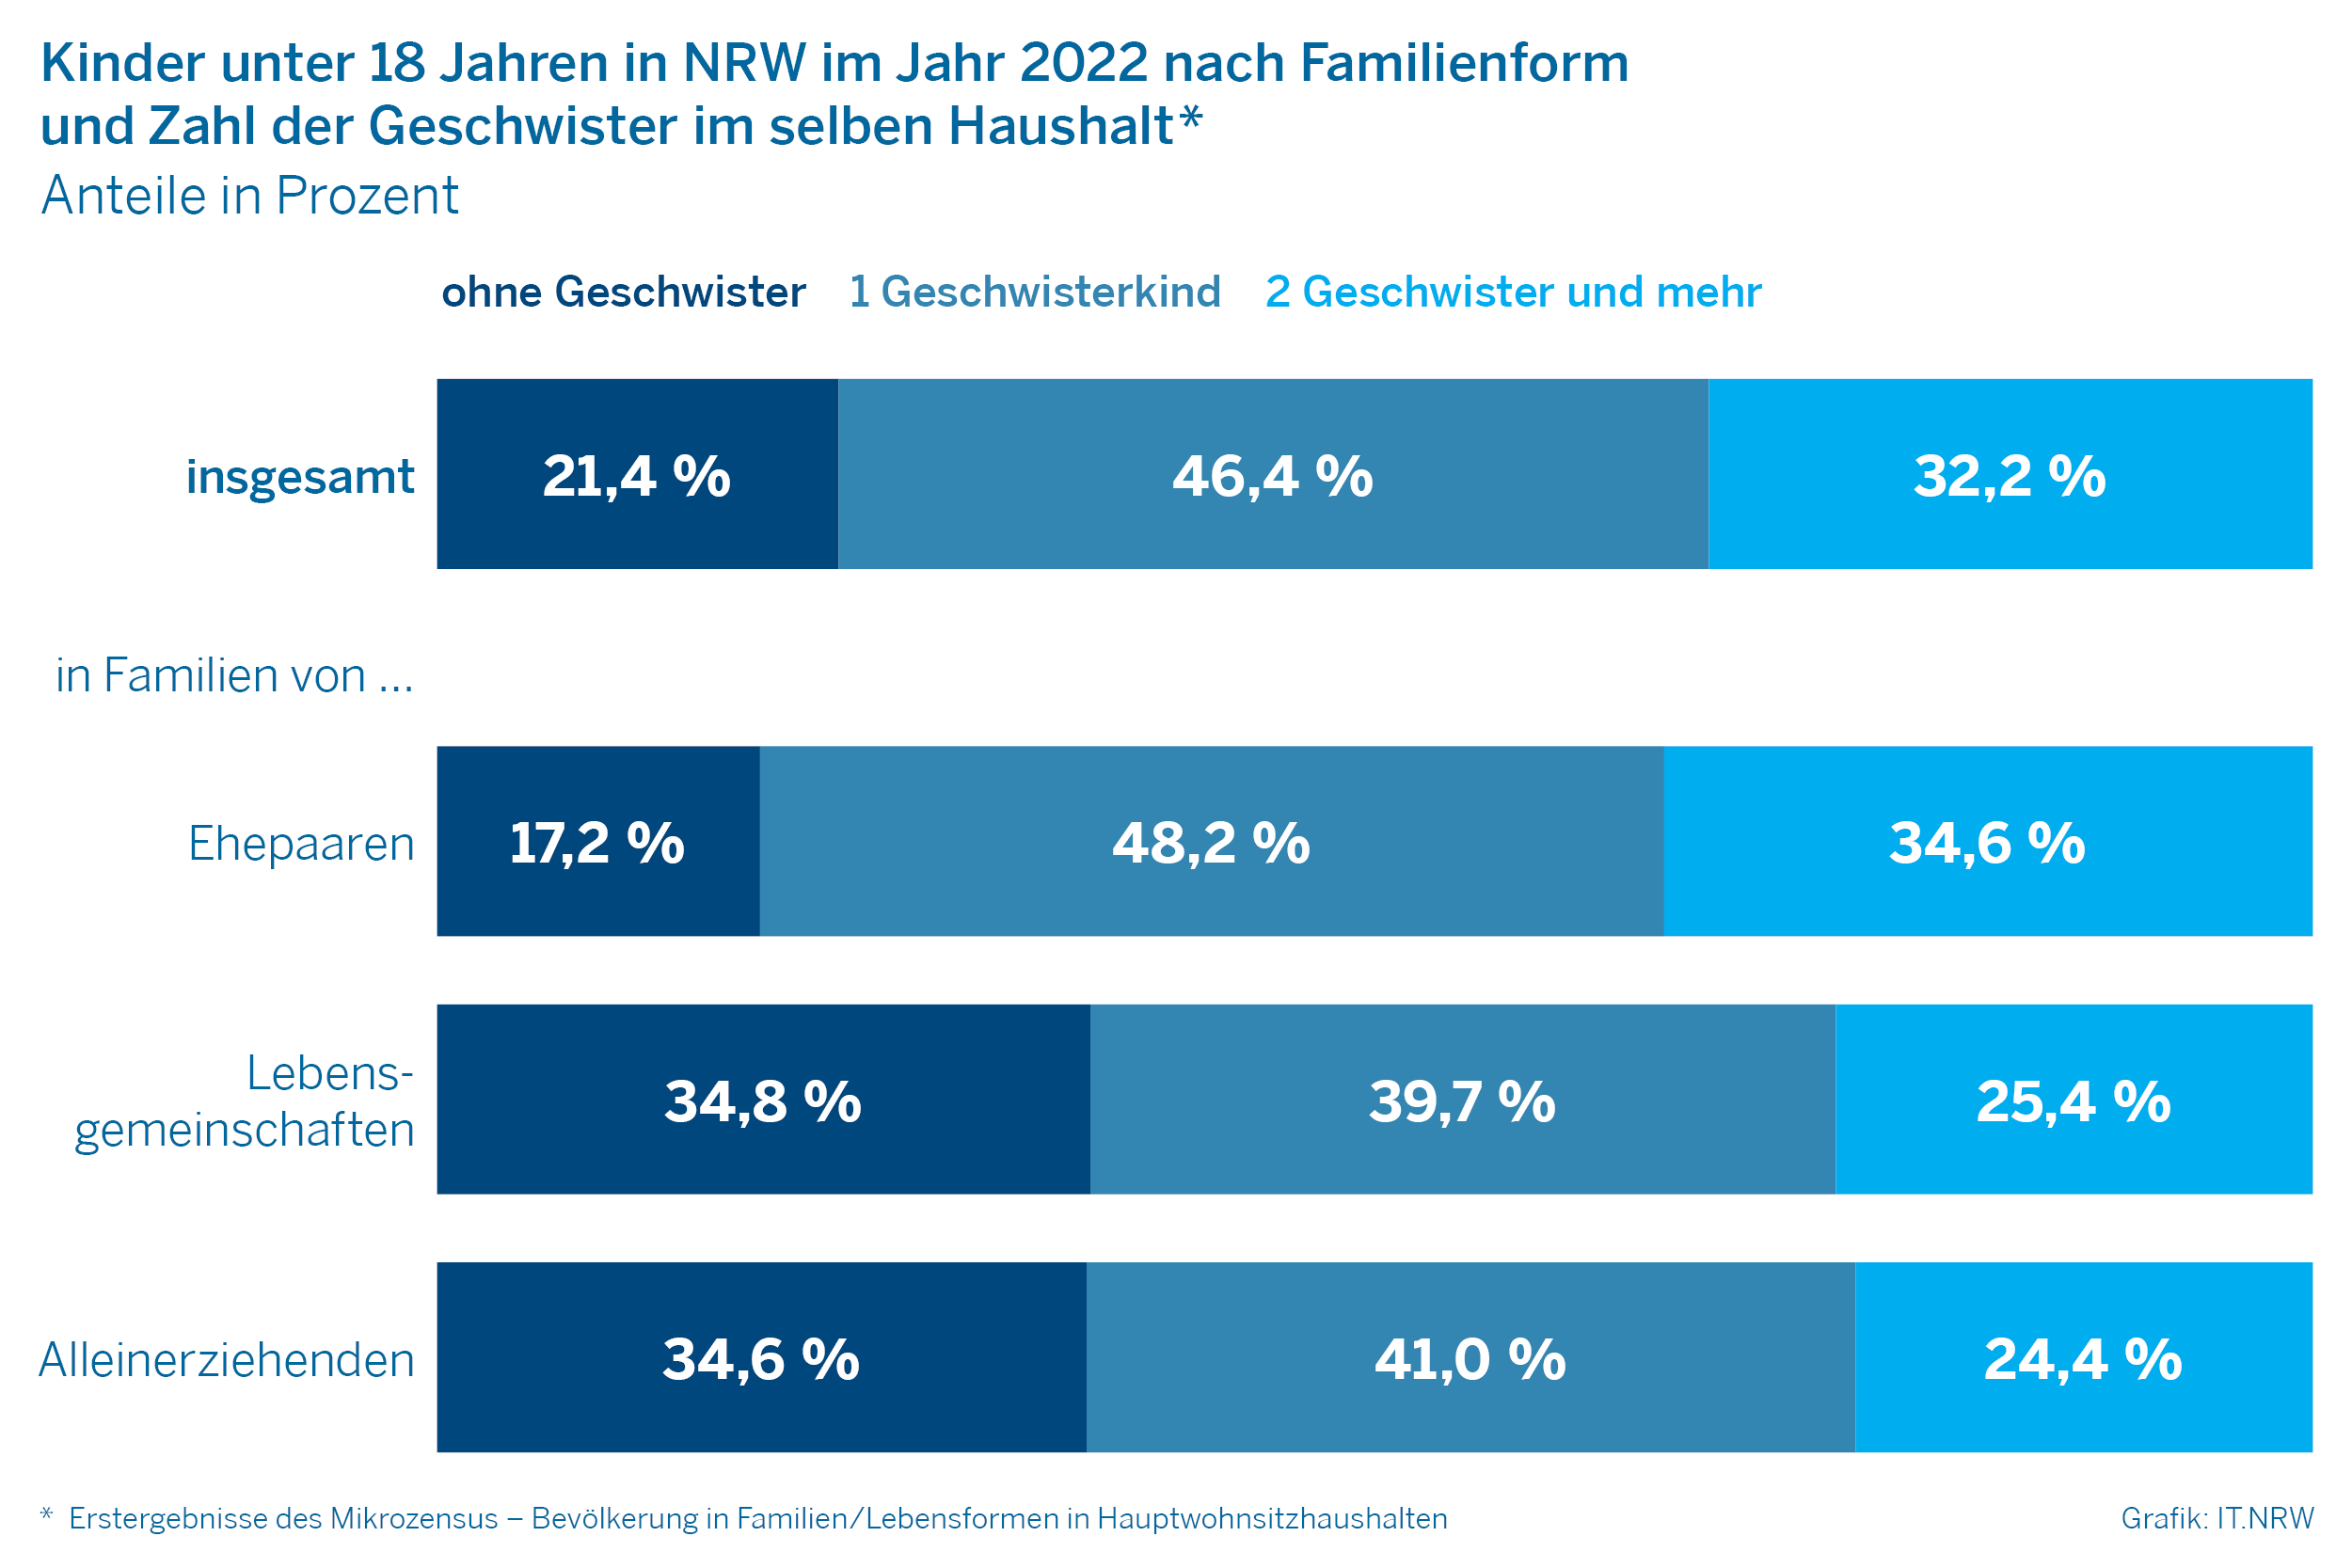 Kinder unter 18 Jahren in NRW im Jahr 2022 nach Familienform und Zahl der Geschwister im selben Haushalt